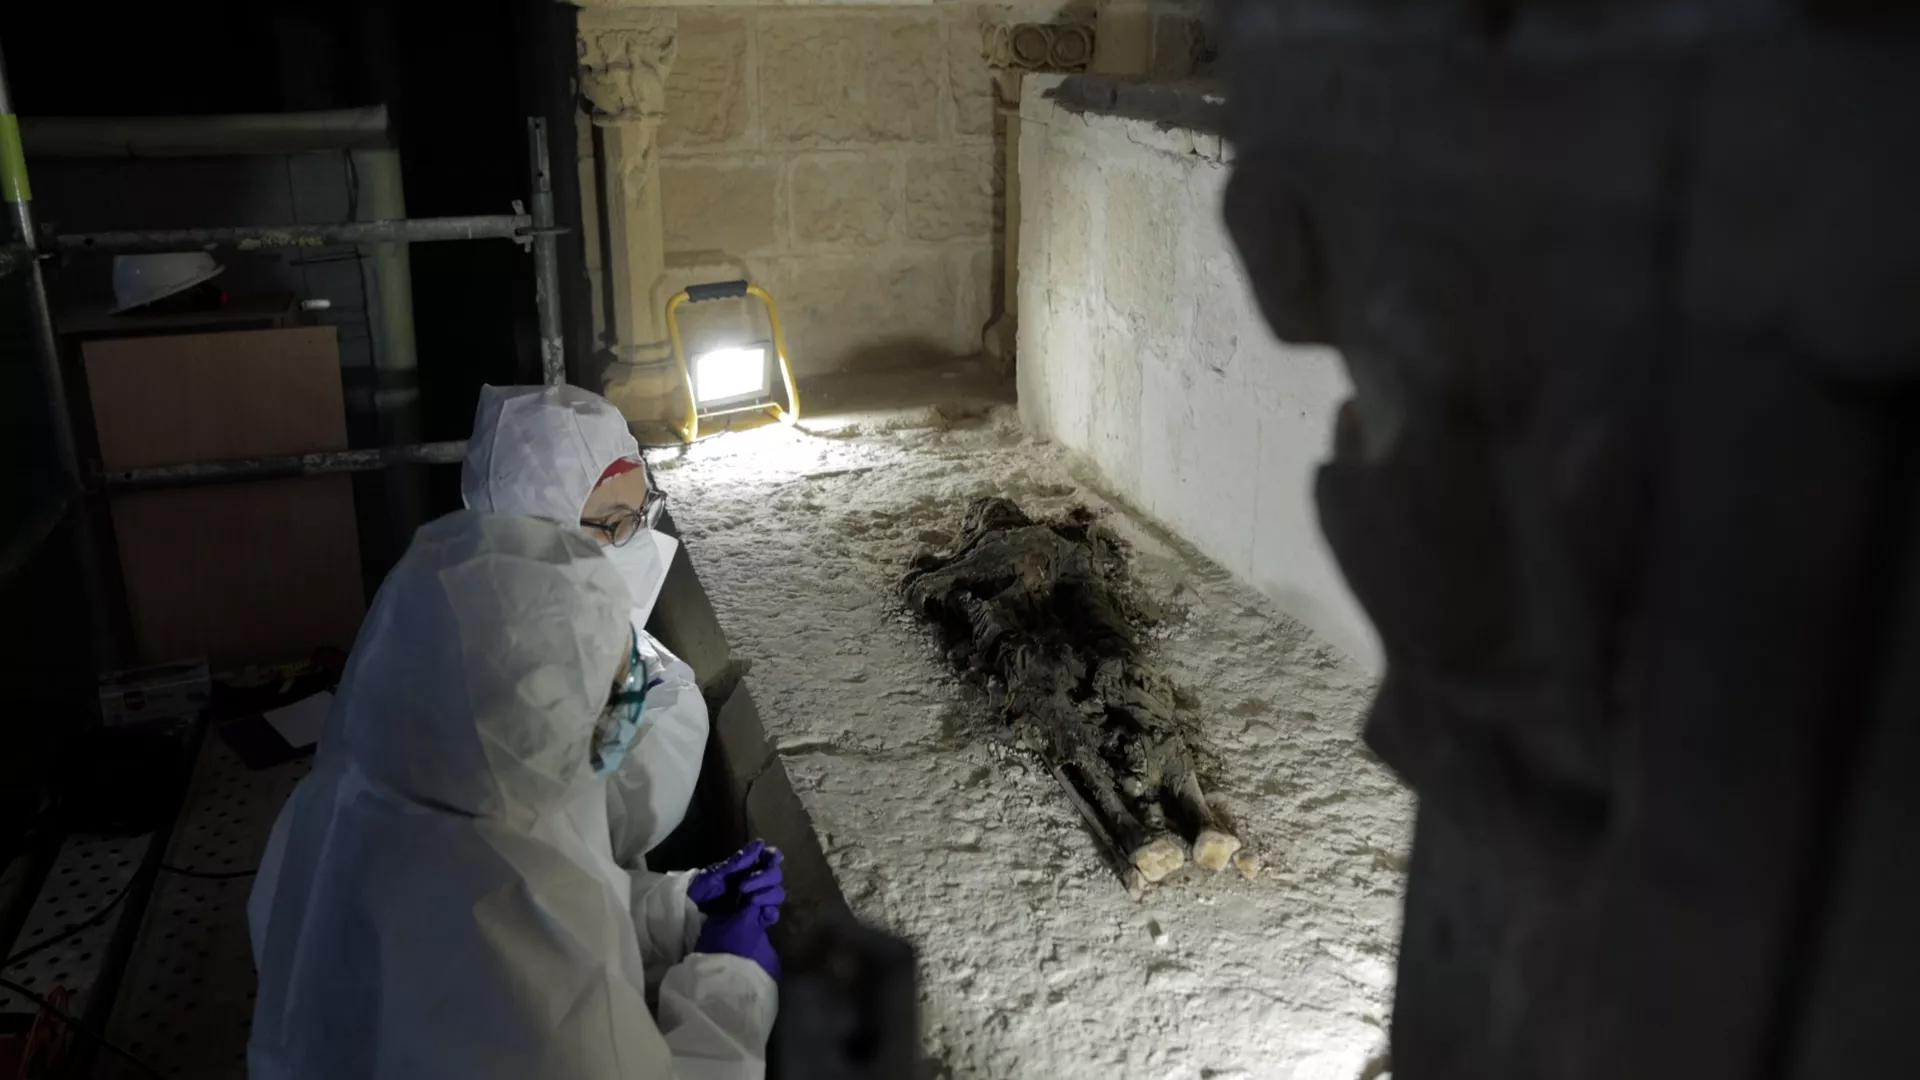 Restes del conjunt funerari localitzat durant les obres de restauració del Reial Monestir de Santes Creus